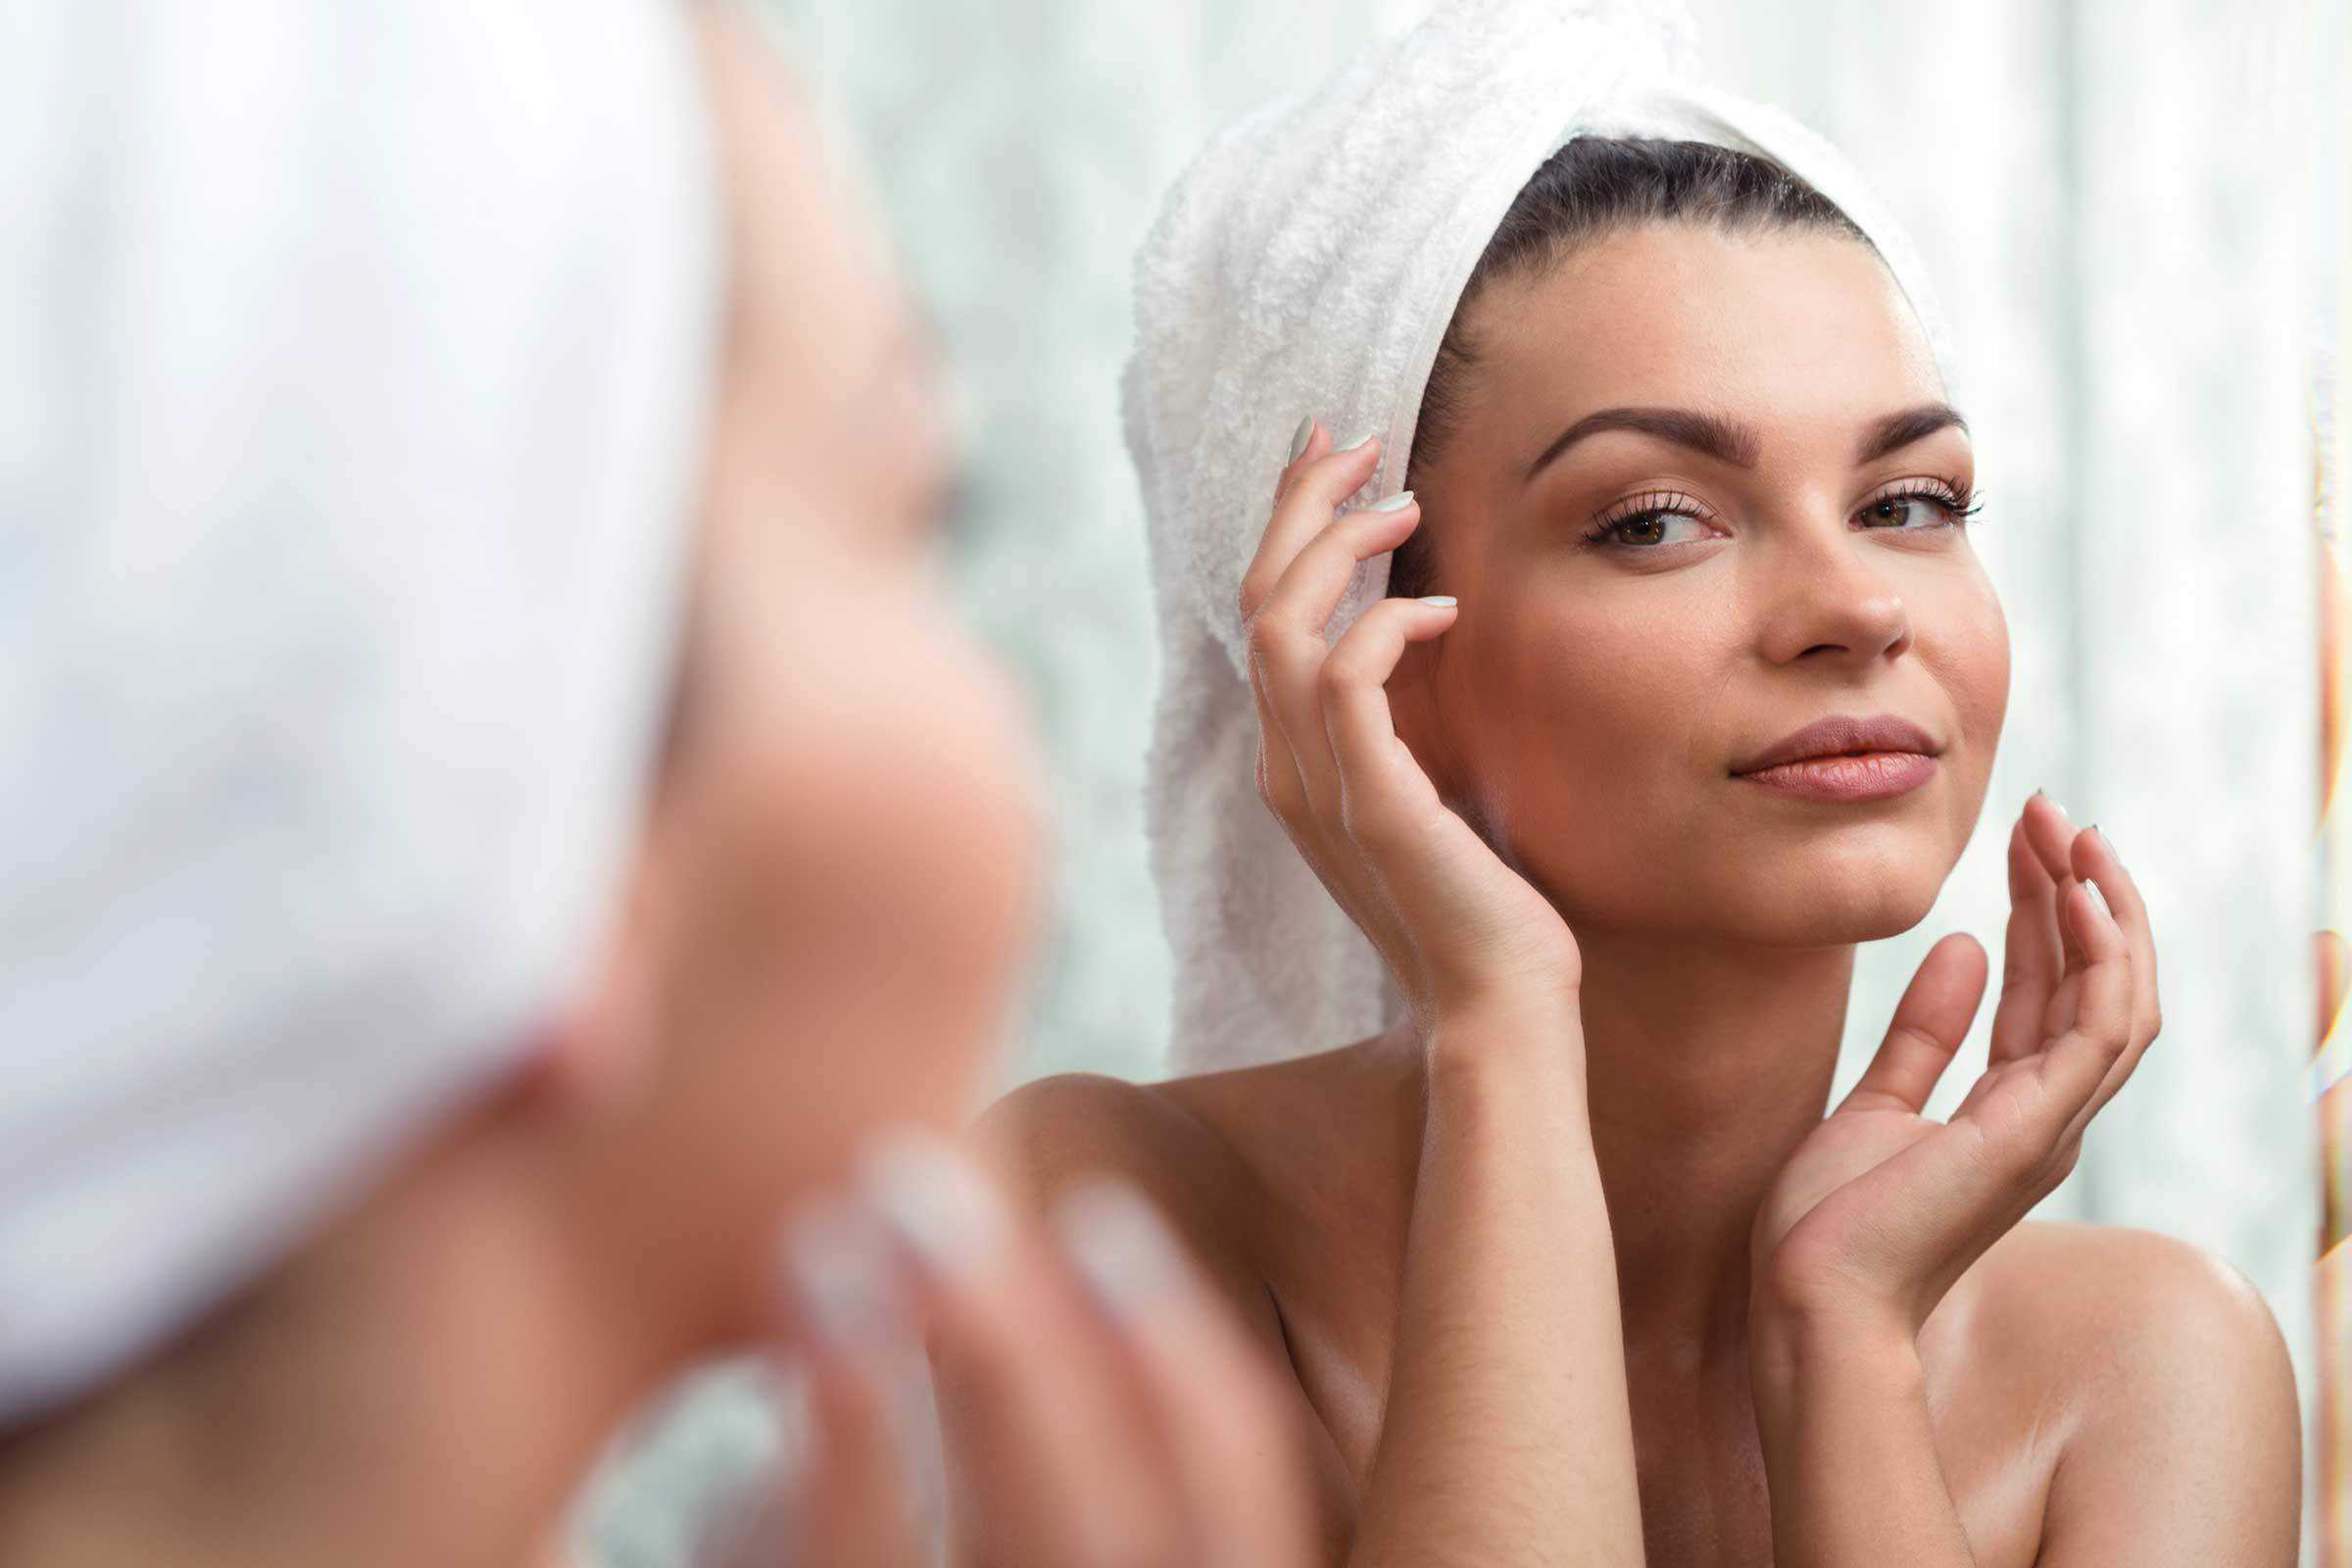 Зачем женщине нужен макияж: мнение психологов о косметике